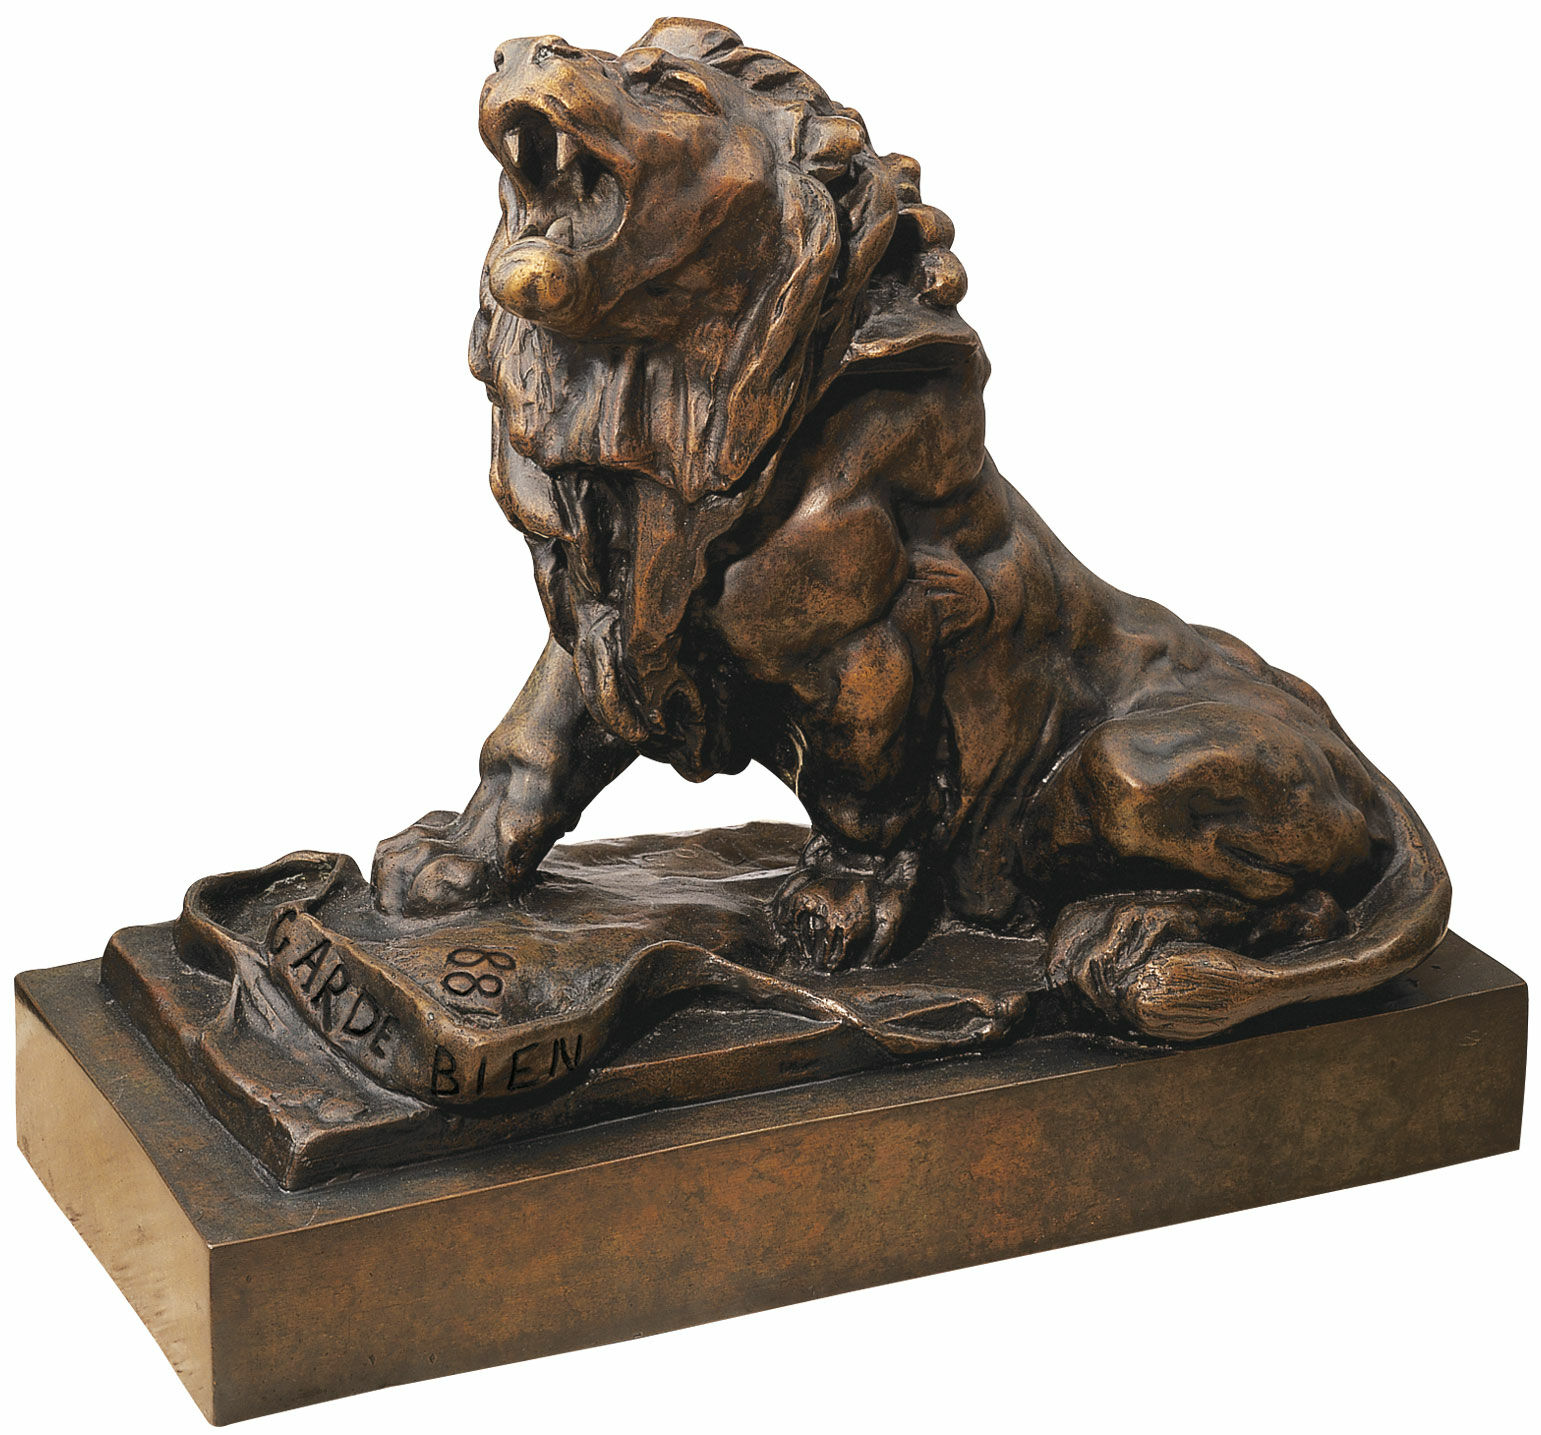 Skulptur "Det gråtande lejonet" (Le lion qui pleure), bronsversion von Auguste Rodin